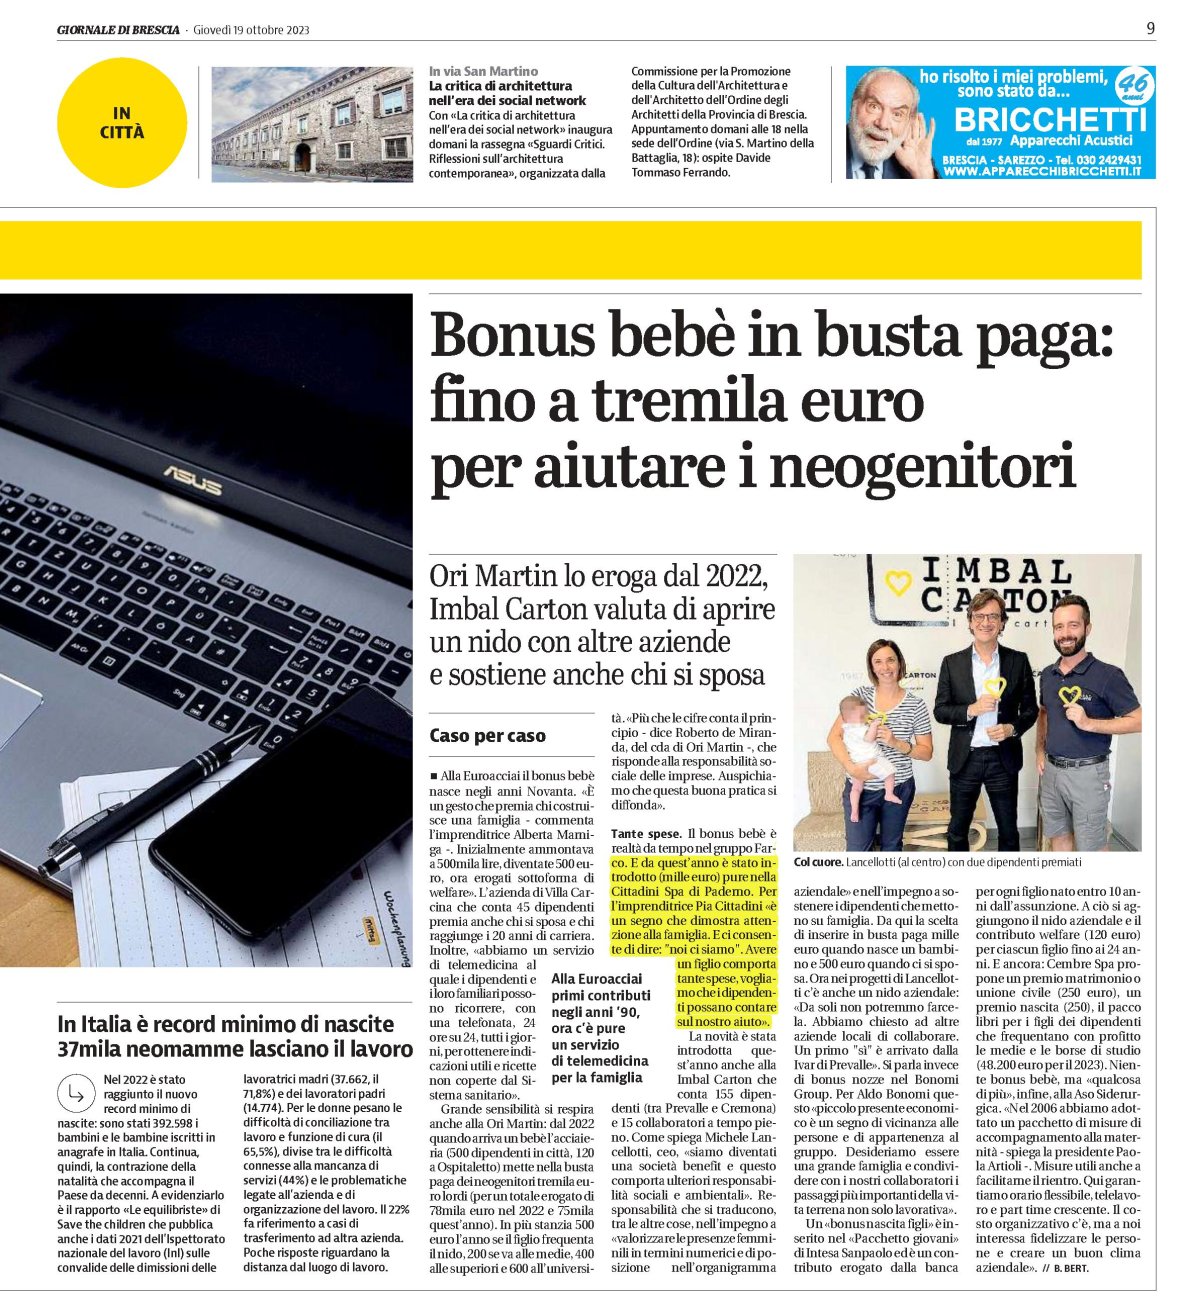 Articolo Giornale di Brescia - Bonus Bebè